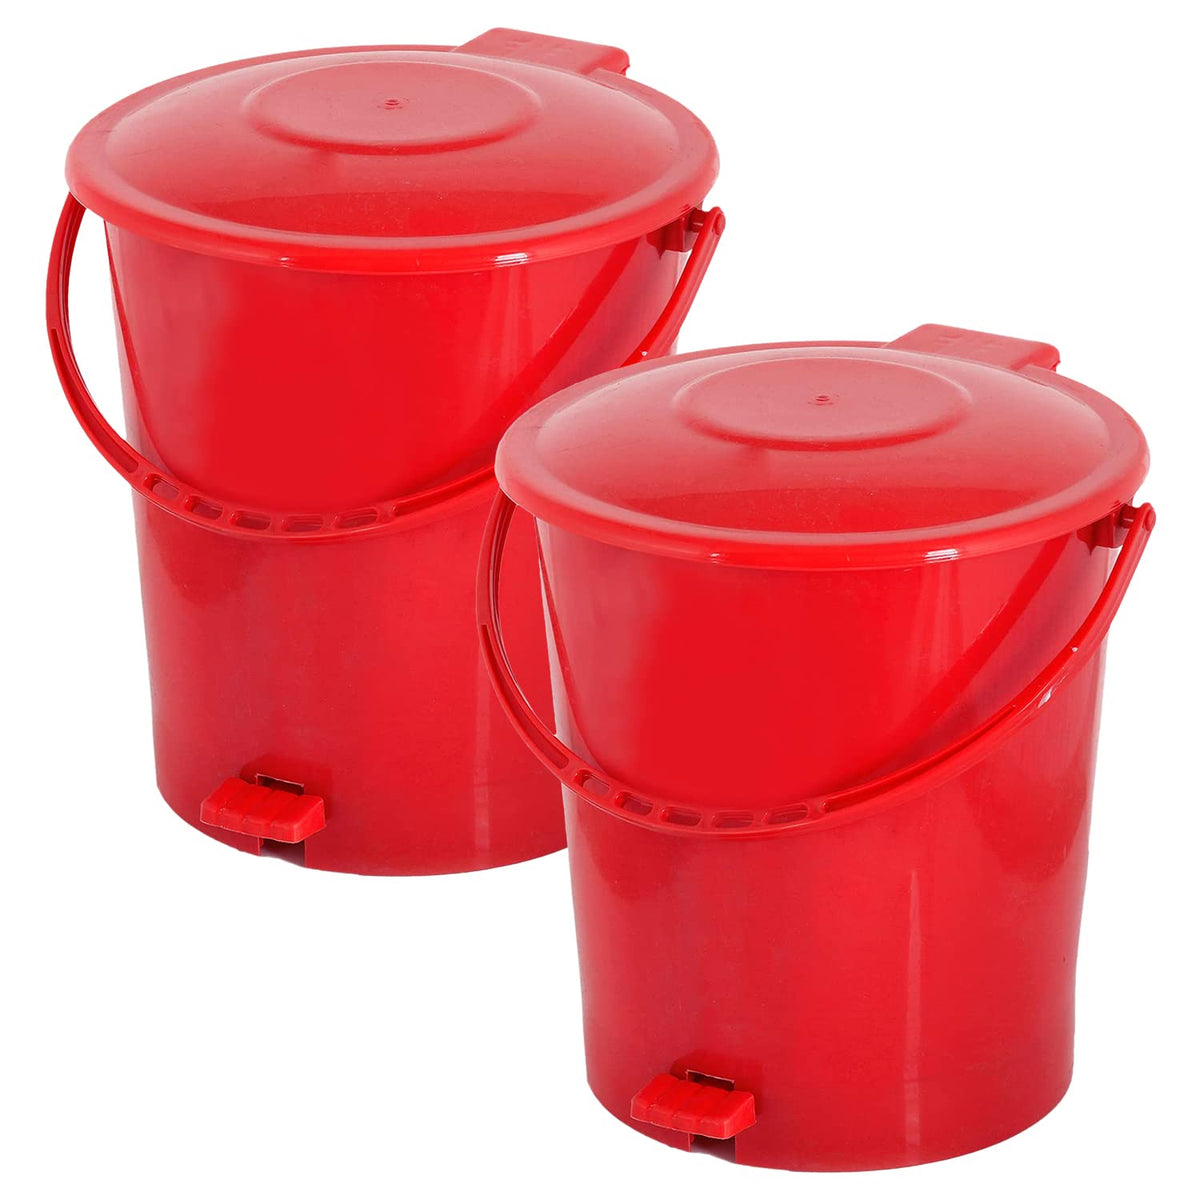 Kuber Industries Pedal Dustbin|Plastic Pedal Dustbin|Kitchen Waste Paper Bin|Dustbin For Bedroom|10 Liter Dustbin|Pack of 2 (Red)